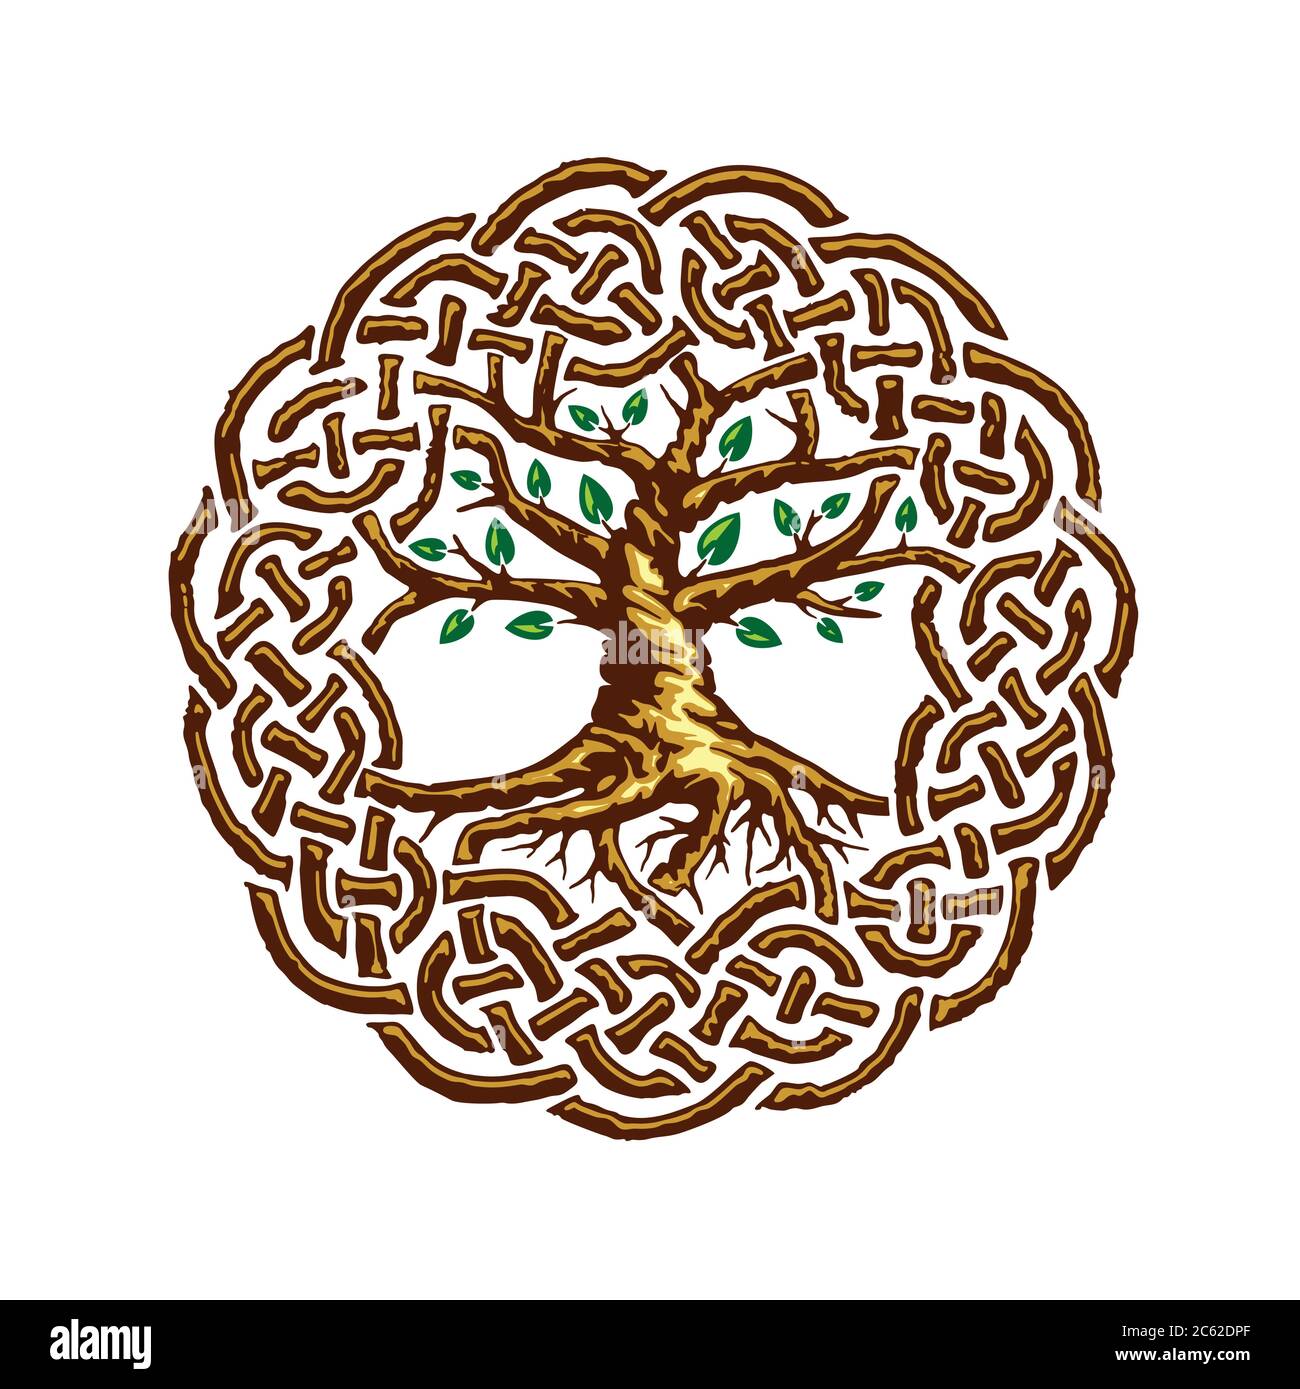 Tree Life Celtic Knot Stock Illustrations – 308 Tree Life Celtic Knot Stock  Illustrations, Vectors & Clipart - Dreamstime